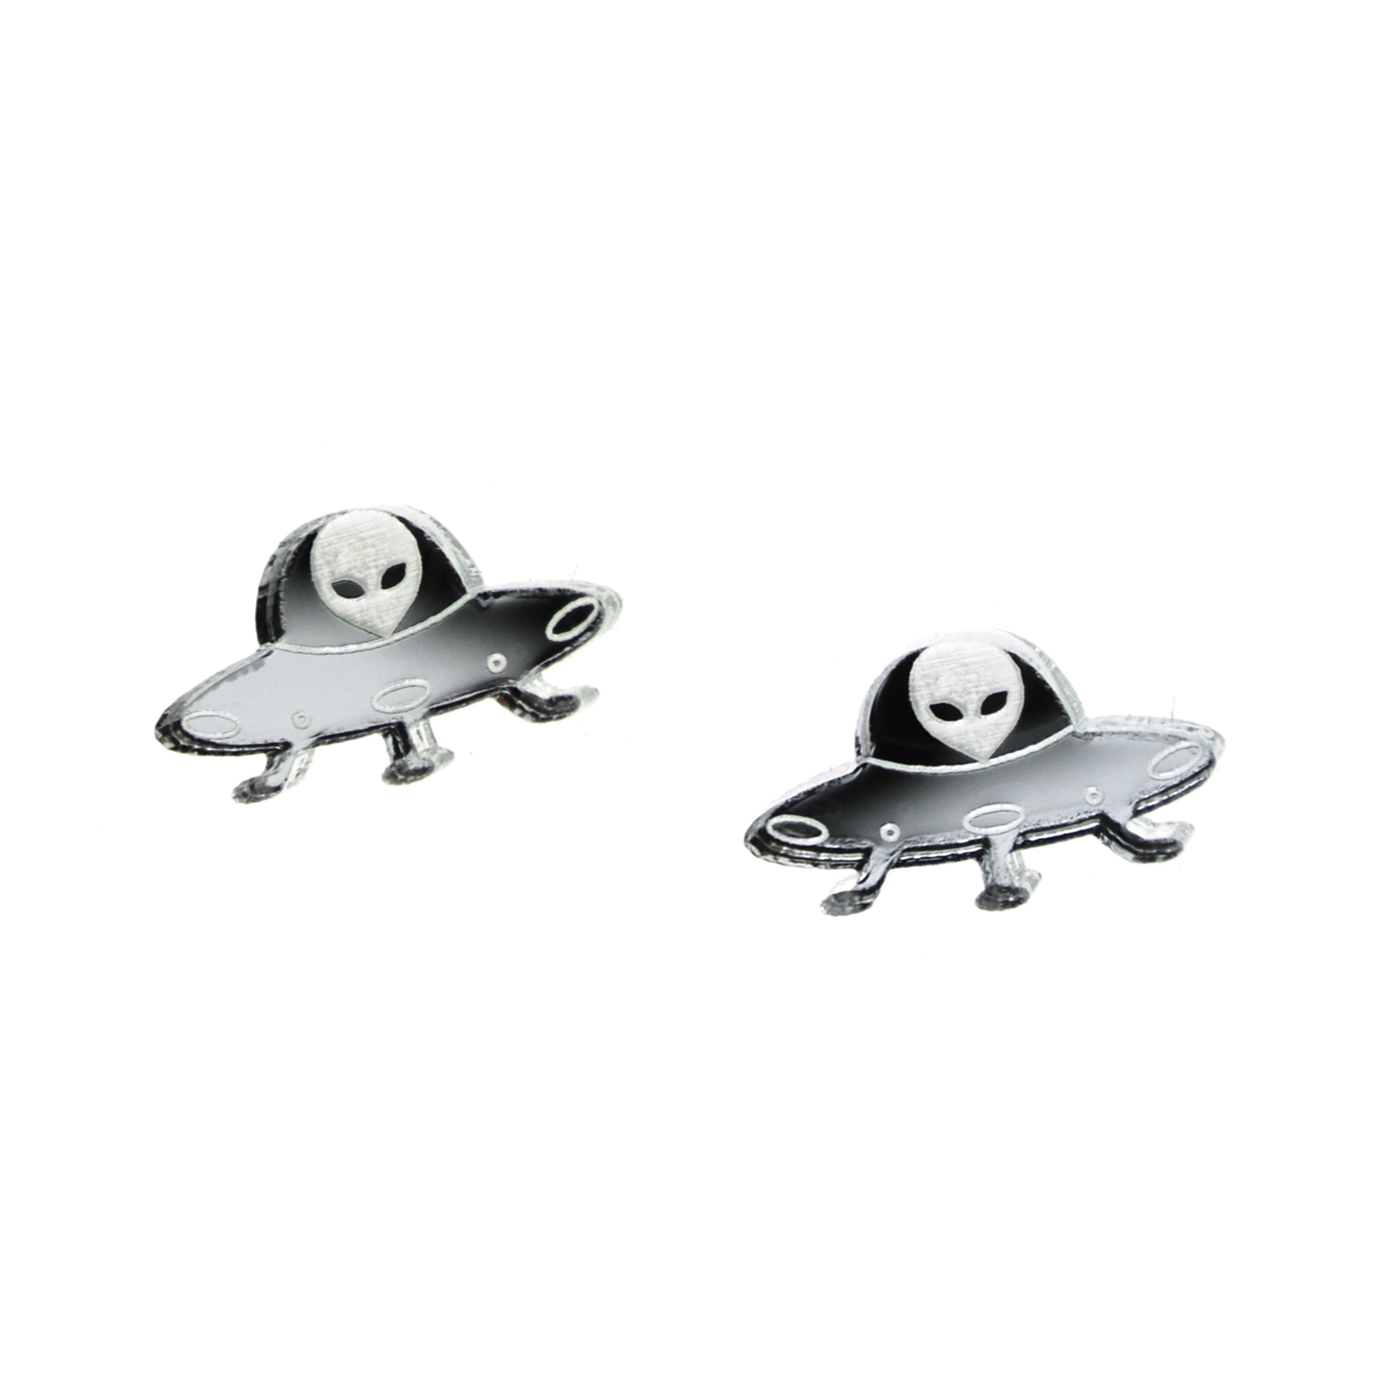 UFO Earrings